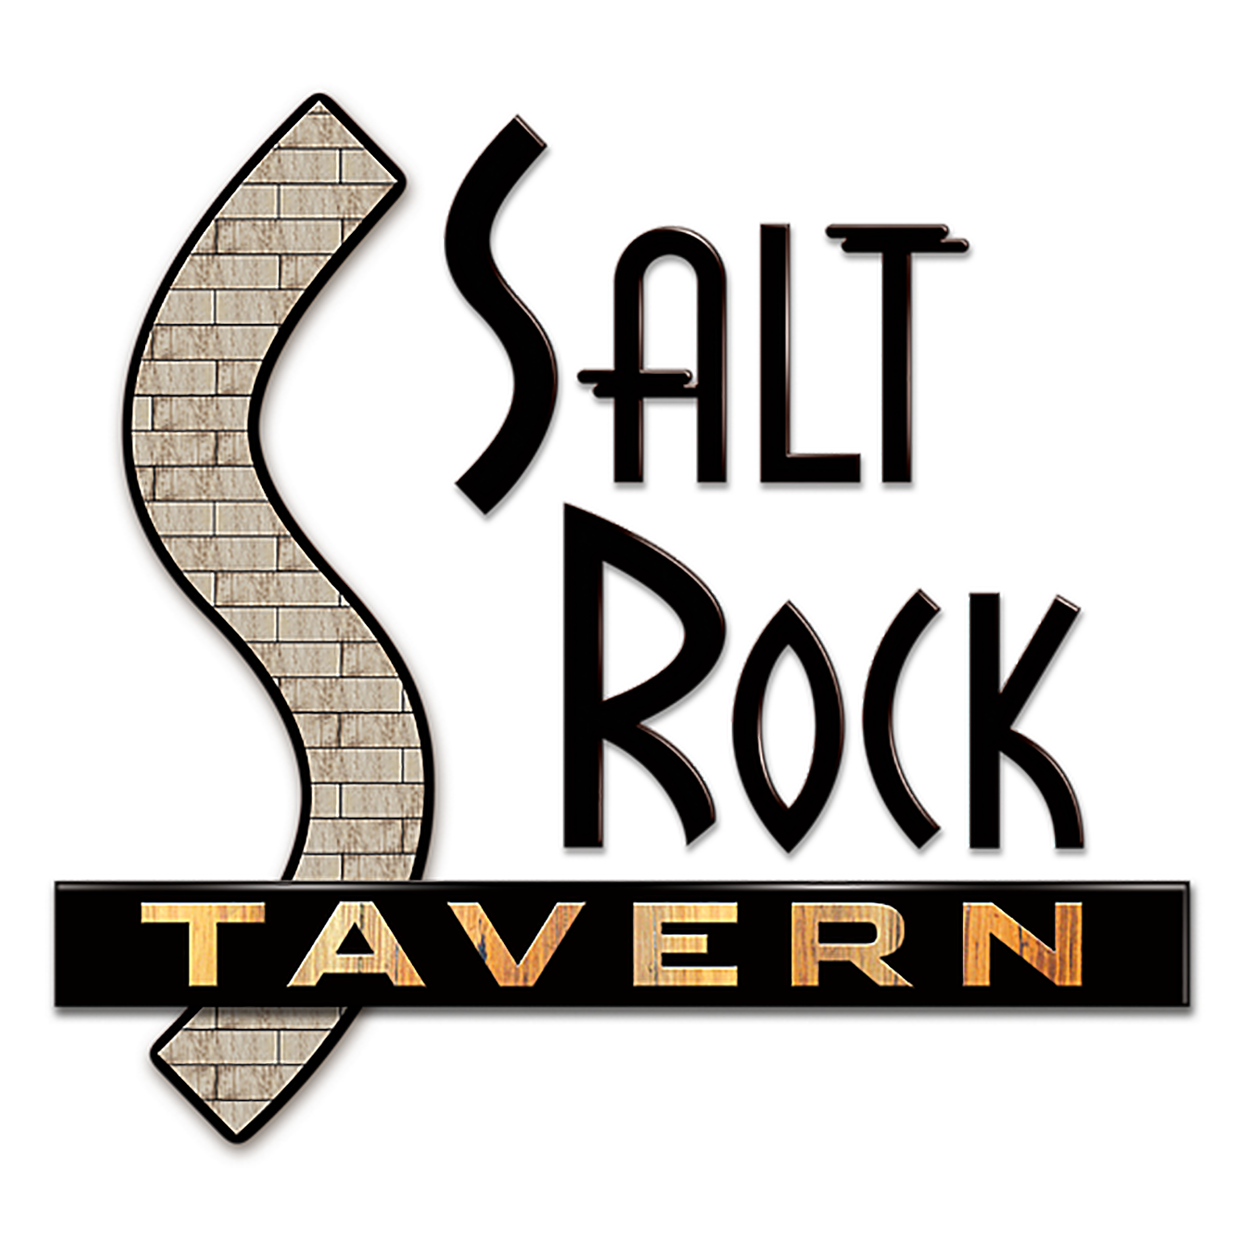 Salt Rock Tavern